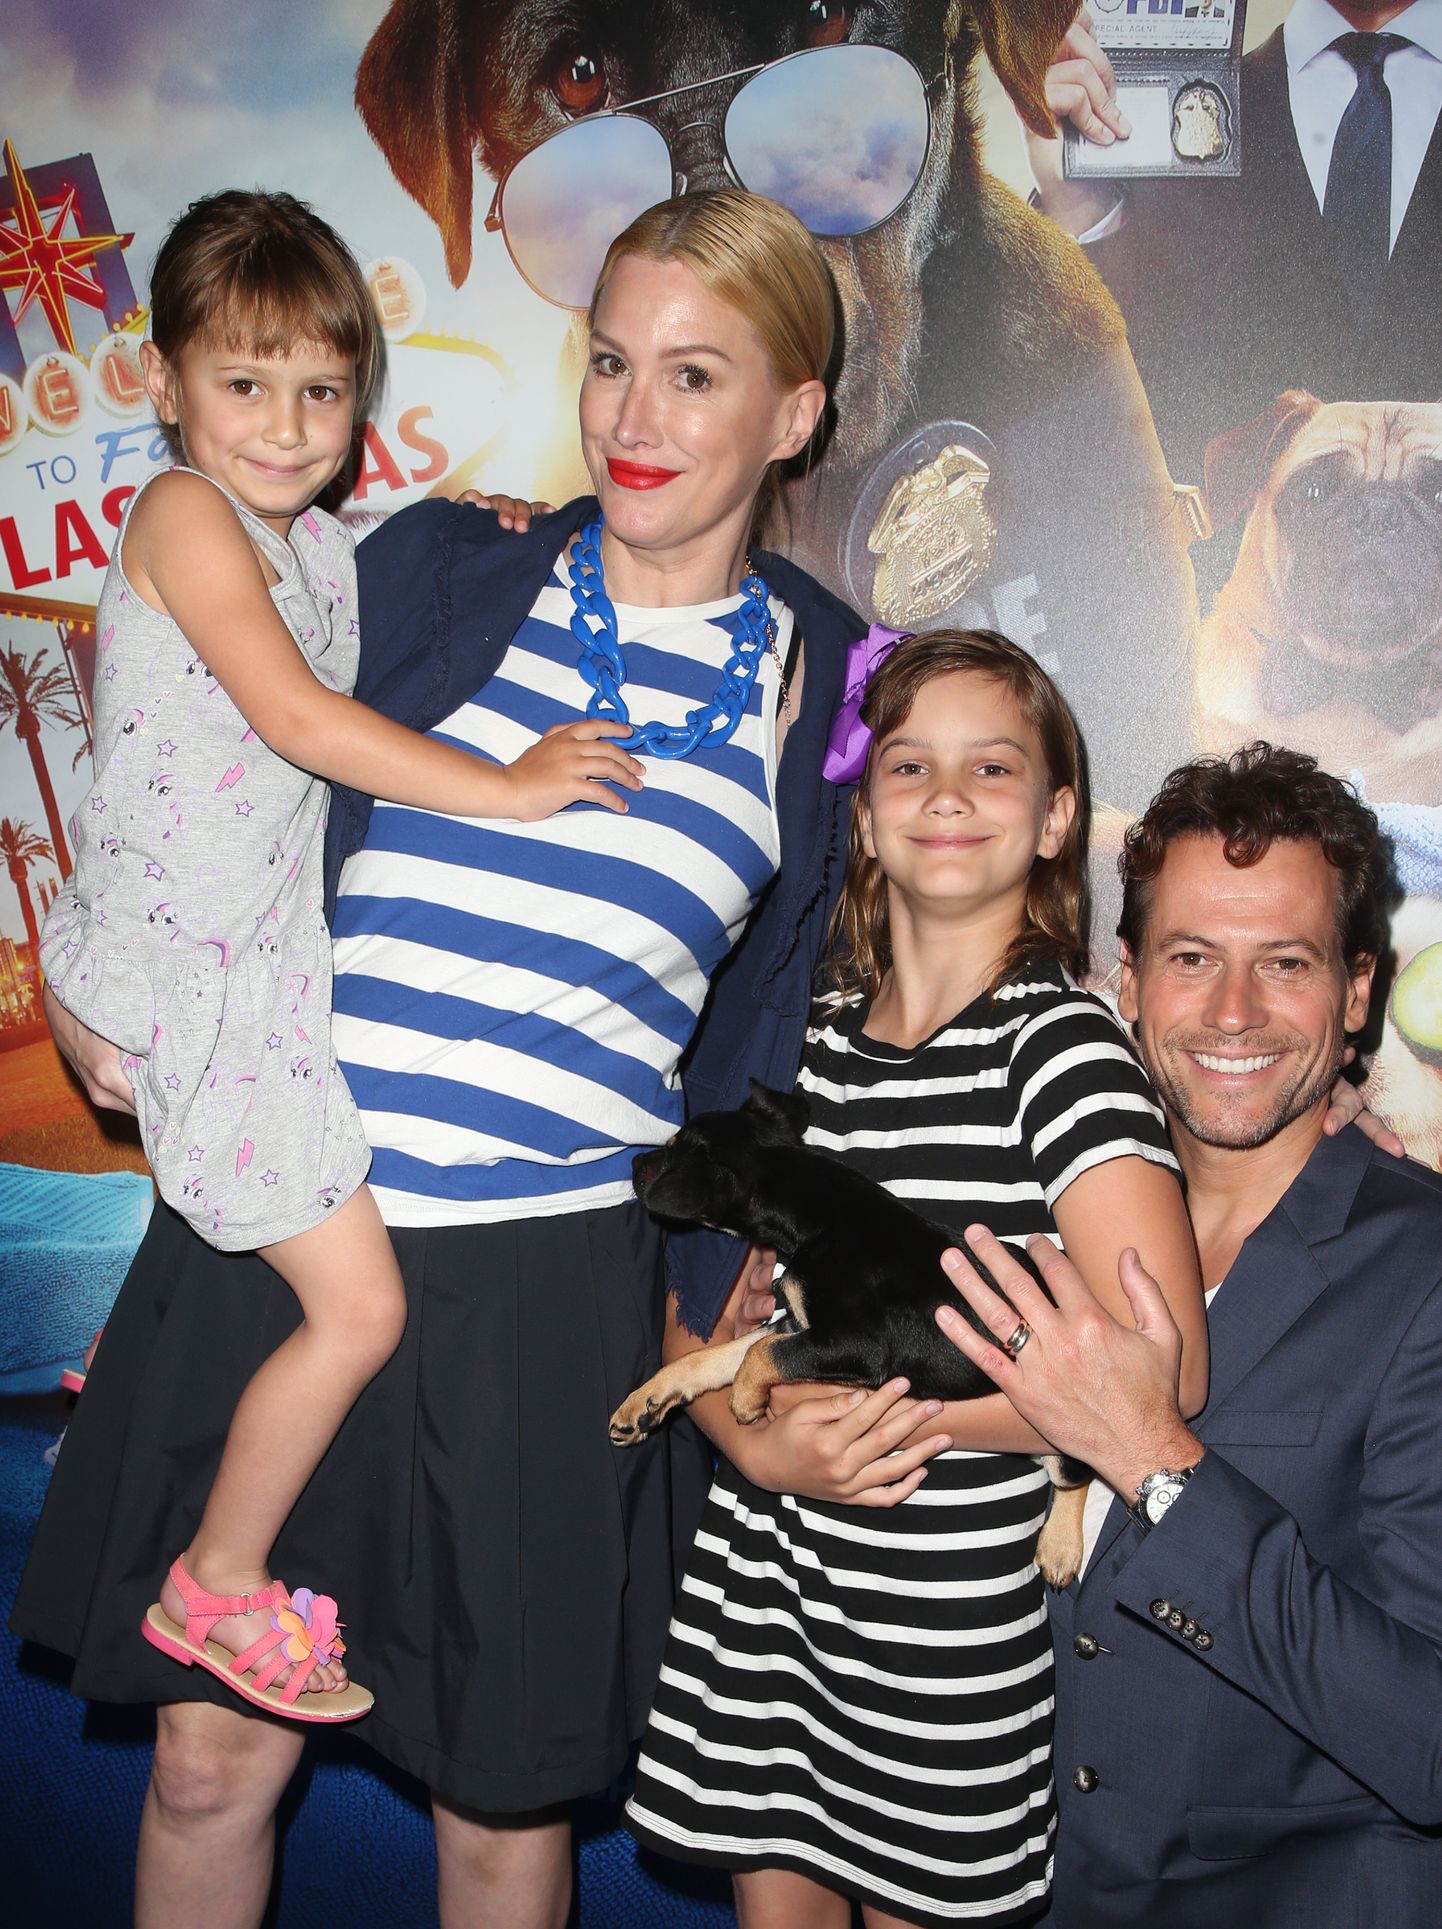 Briti näitleja Ioan Gruffudd oma abikaasa Alice Evansi ja nende kahe tütrega 2018. aastal.